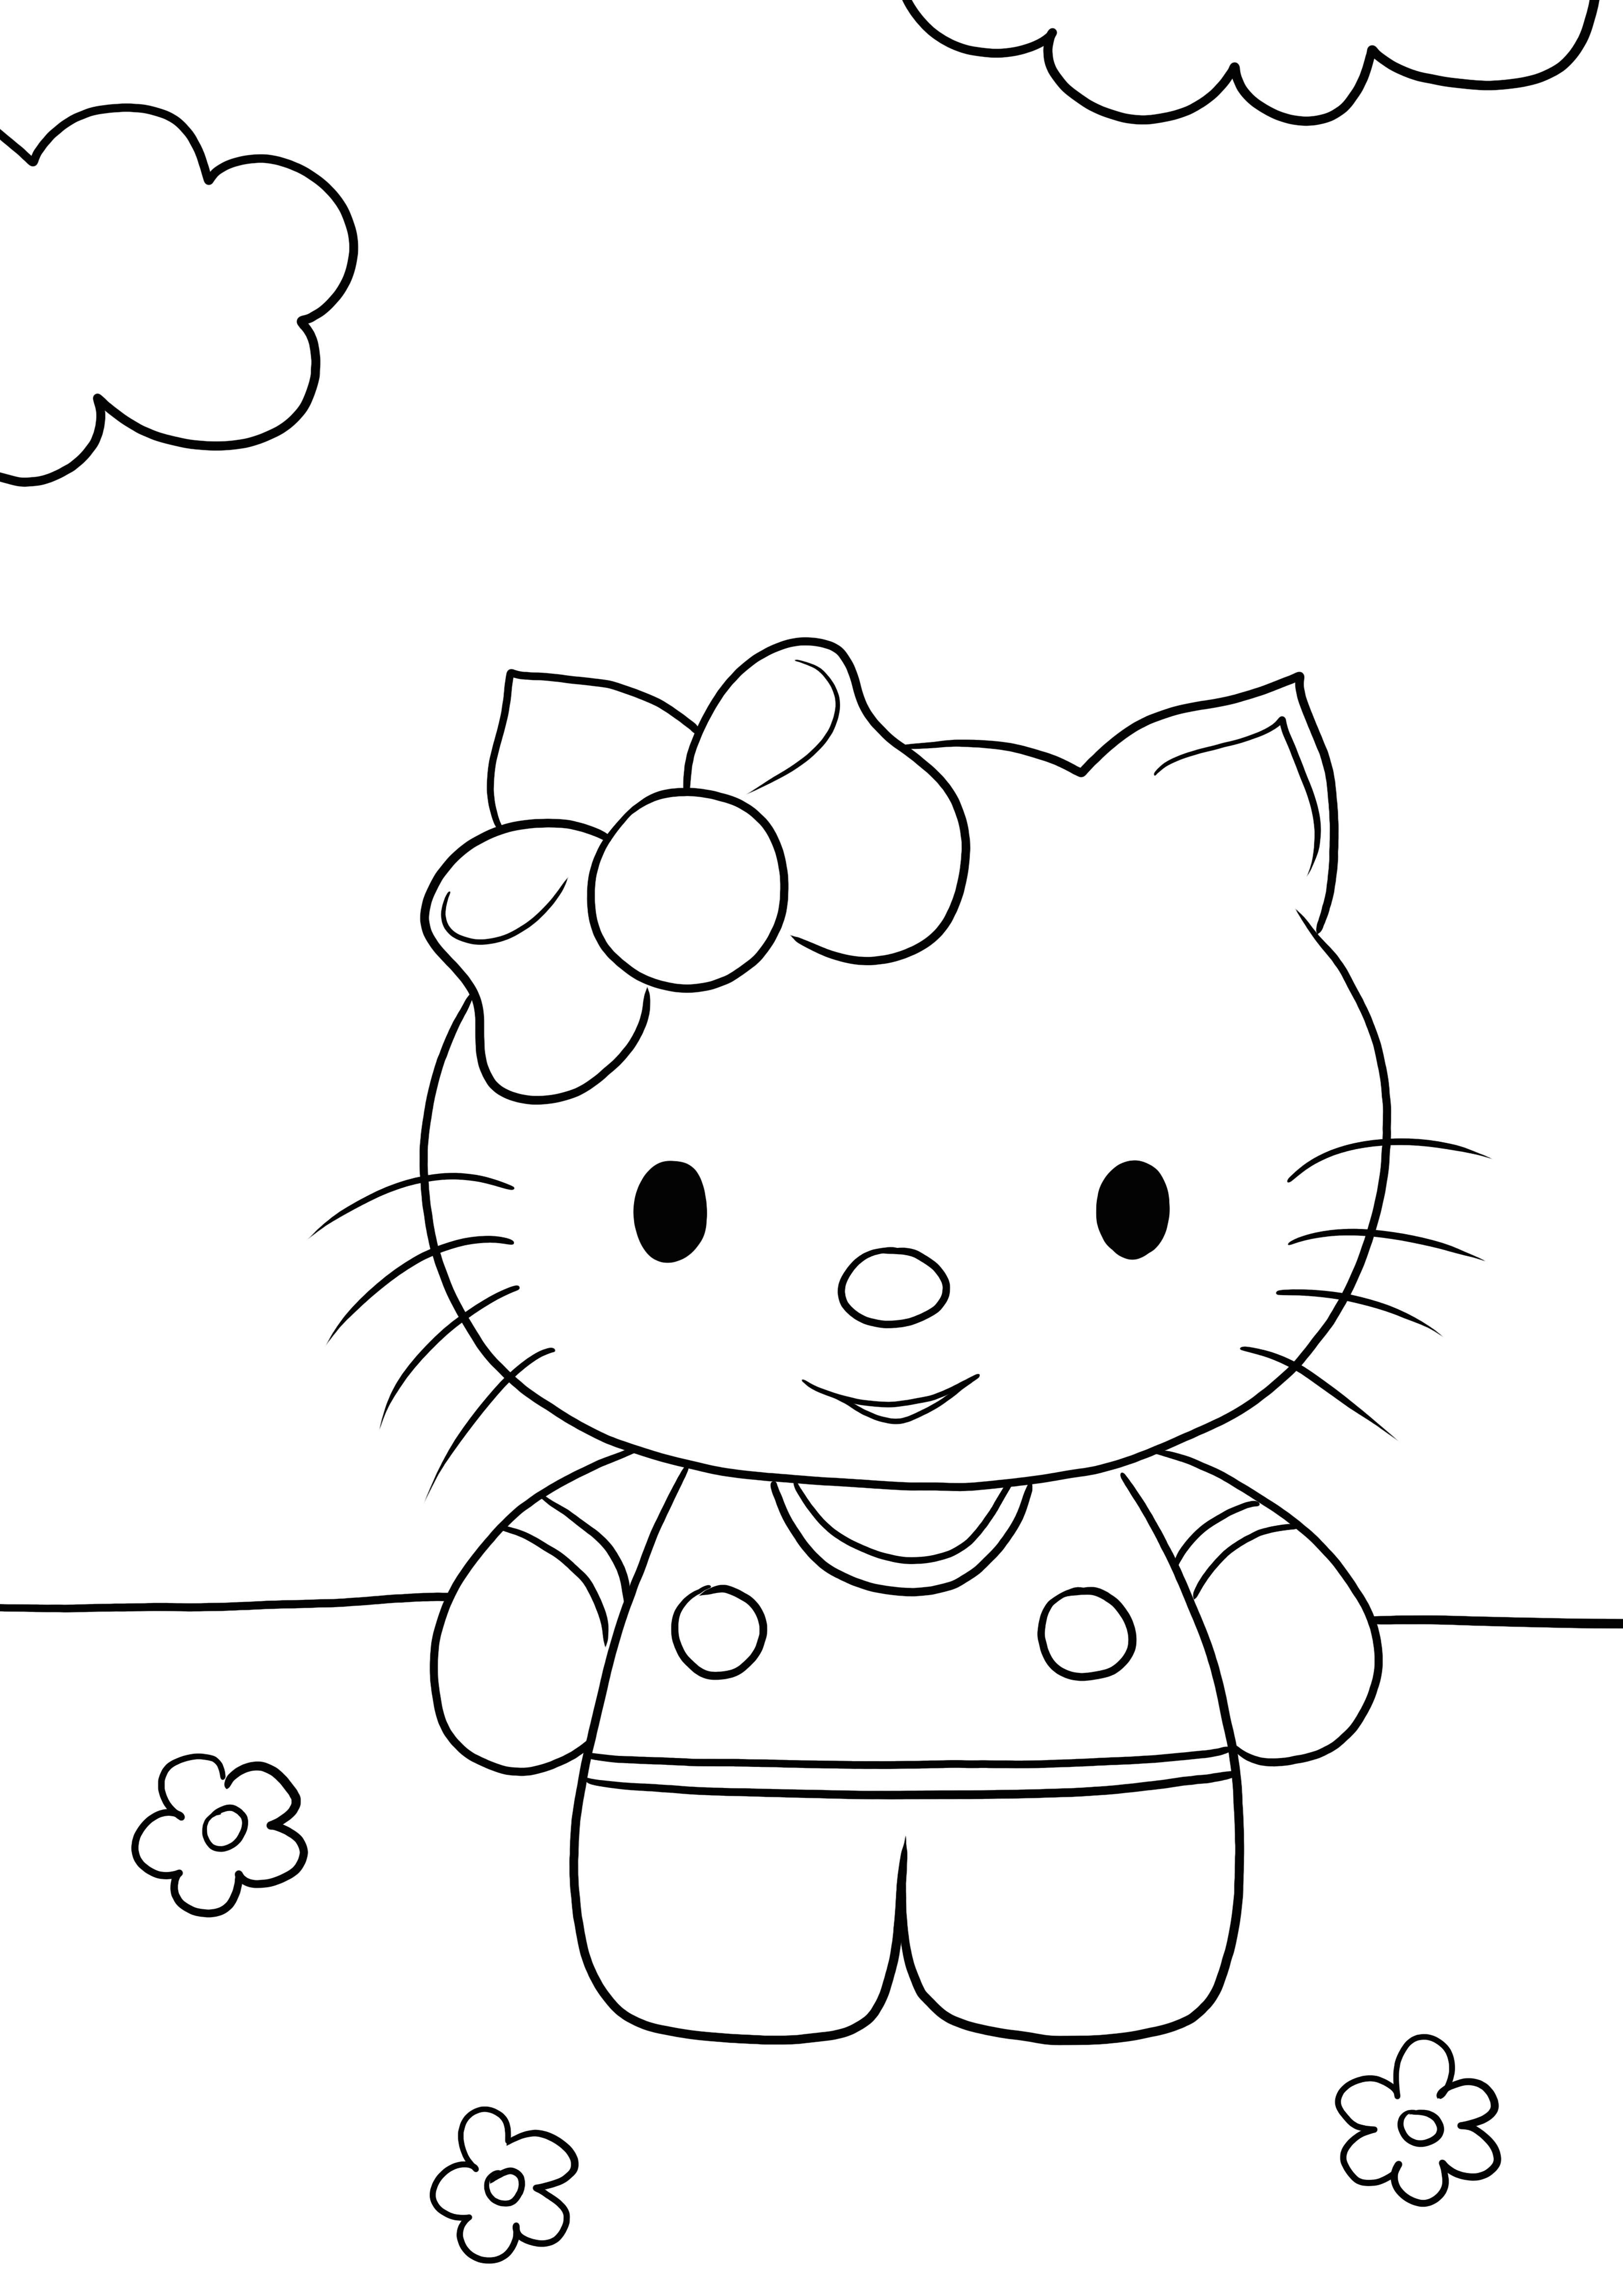 Coloriage gratuit d'Hello Kitty souriante à imprimer ou à télécharger